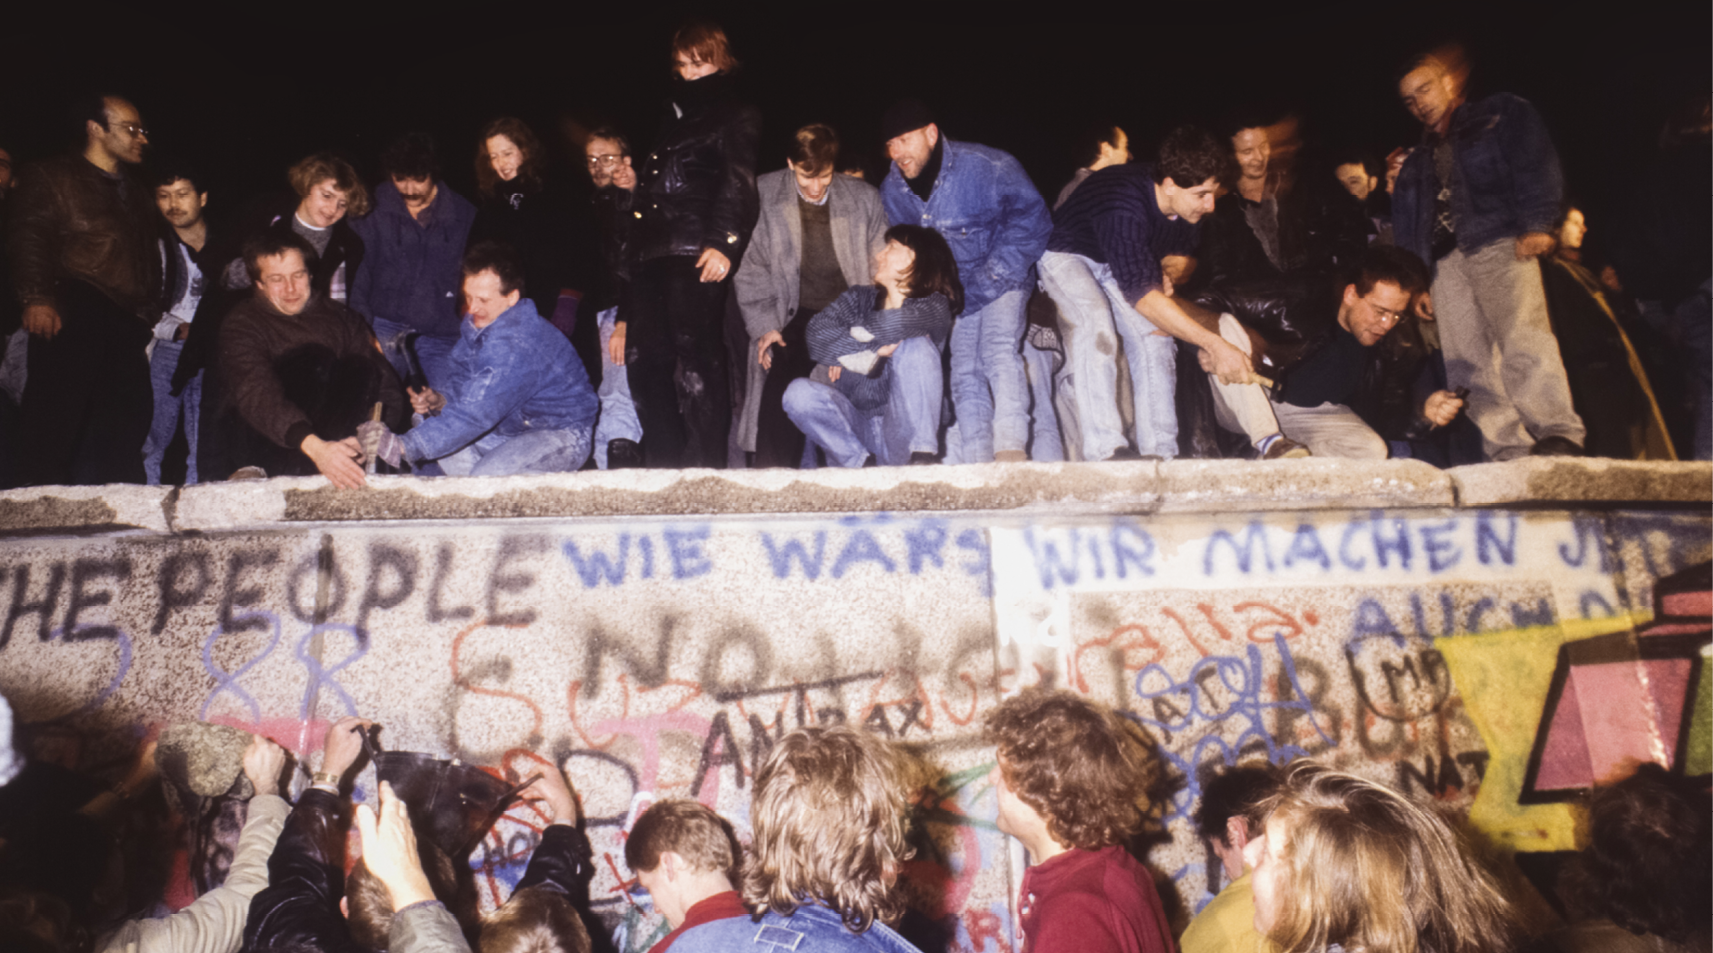 Fotografia. Pessoas no topo do muro de Berlim. À frente do muro, outras pessoas observam. Ele está pichado com símbolos e frases em inglês e alemão.